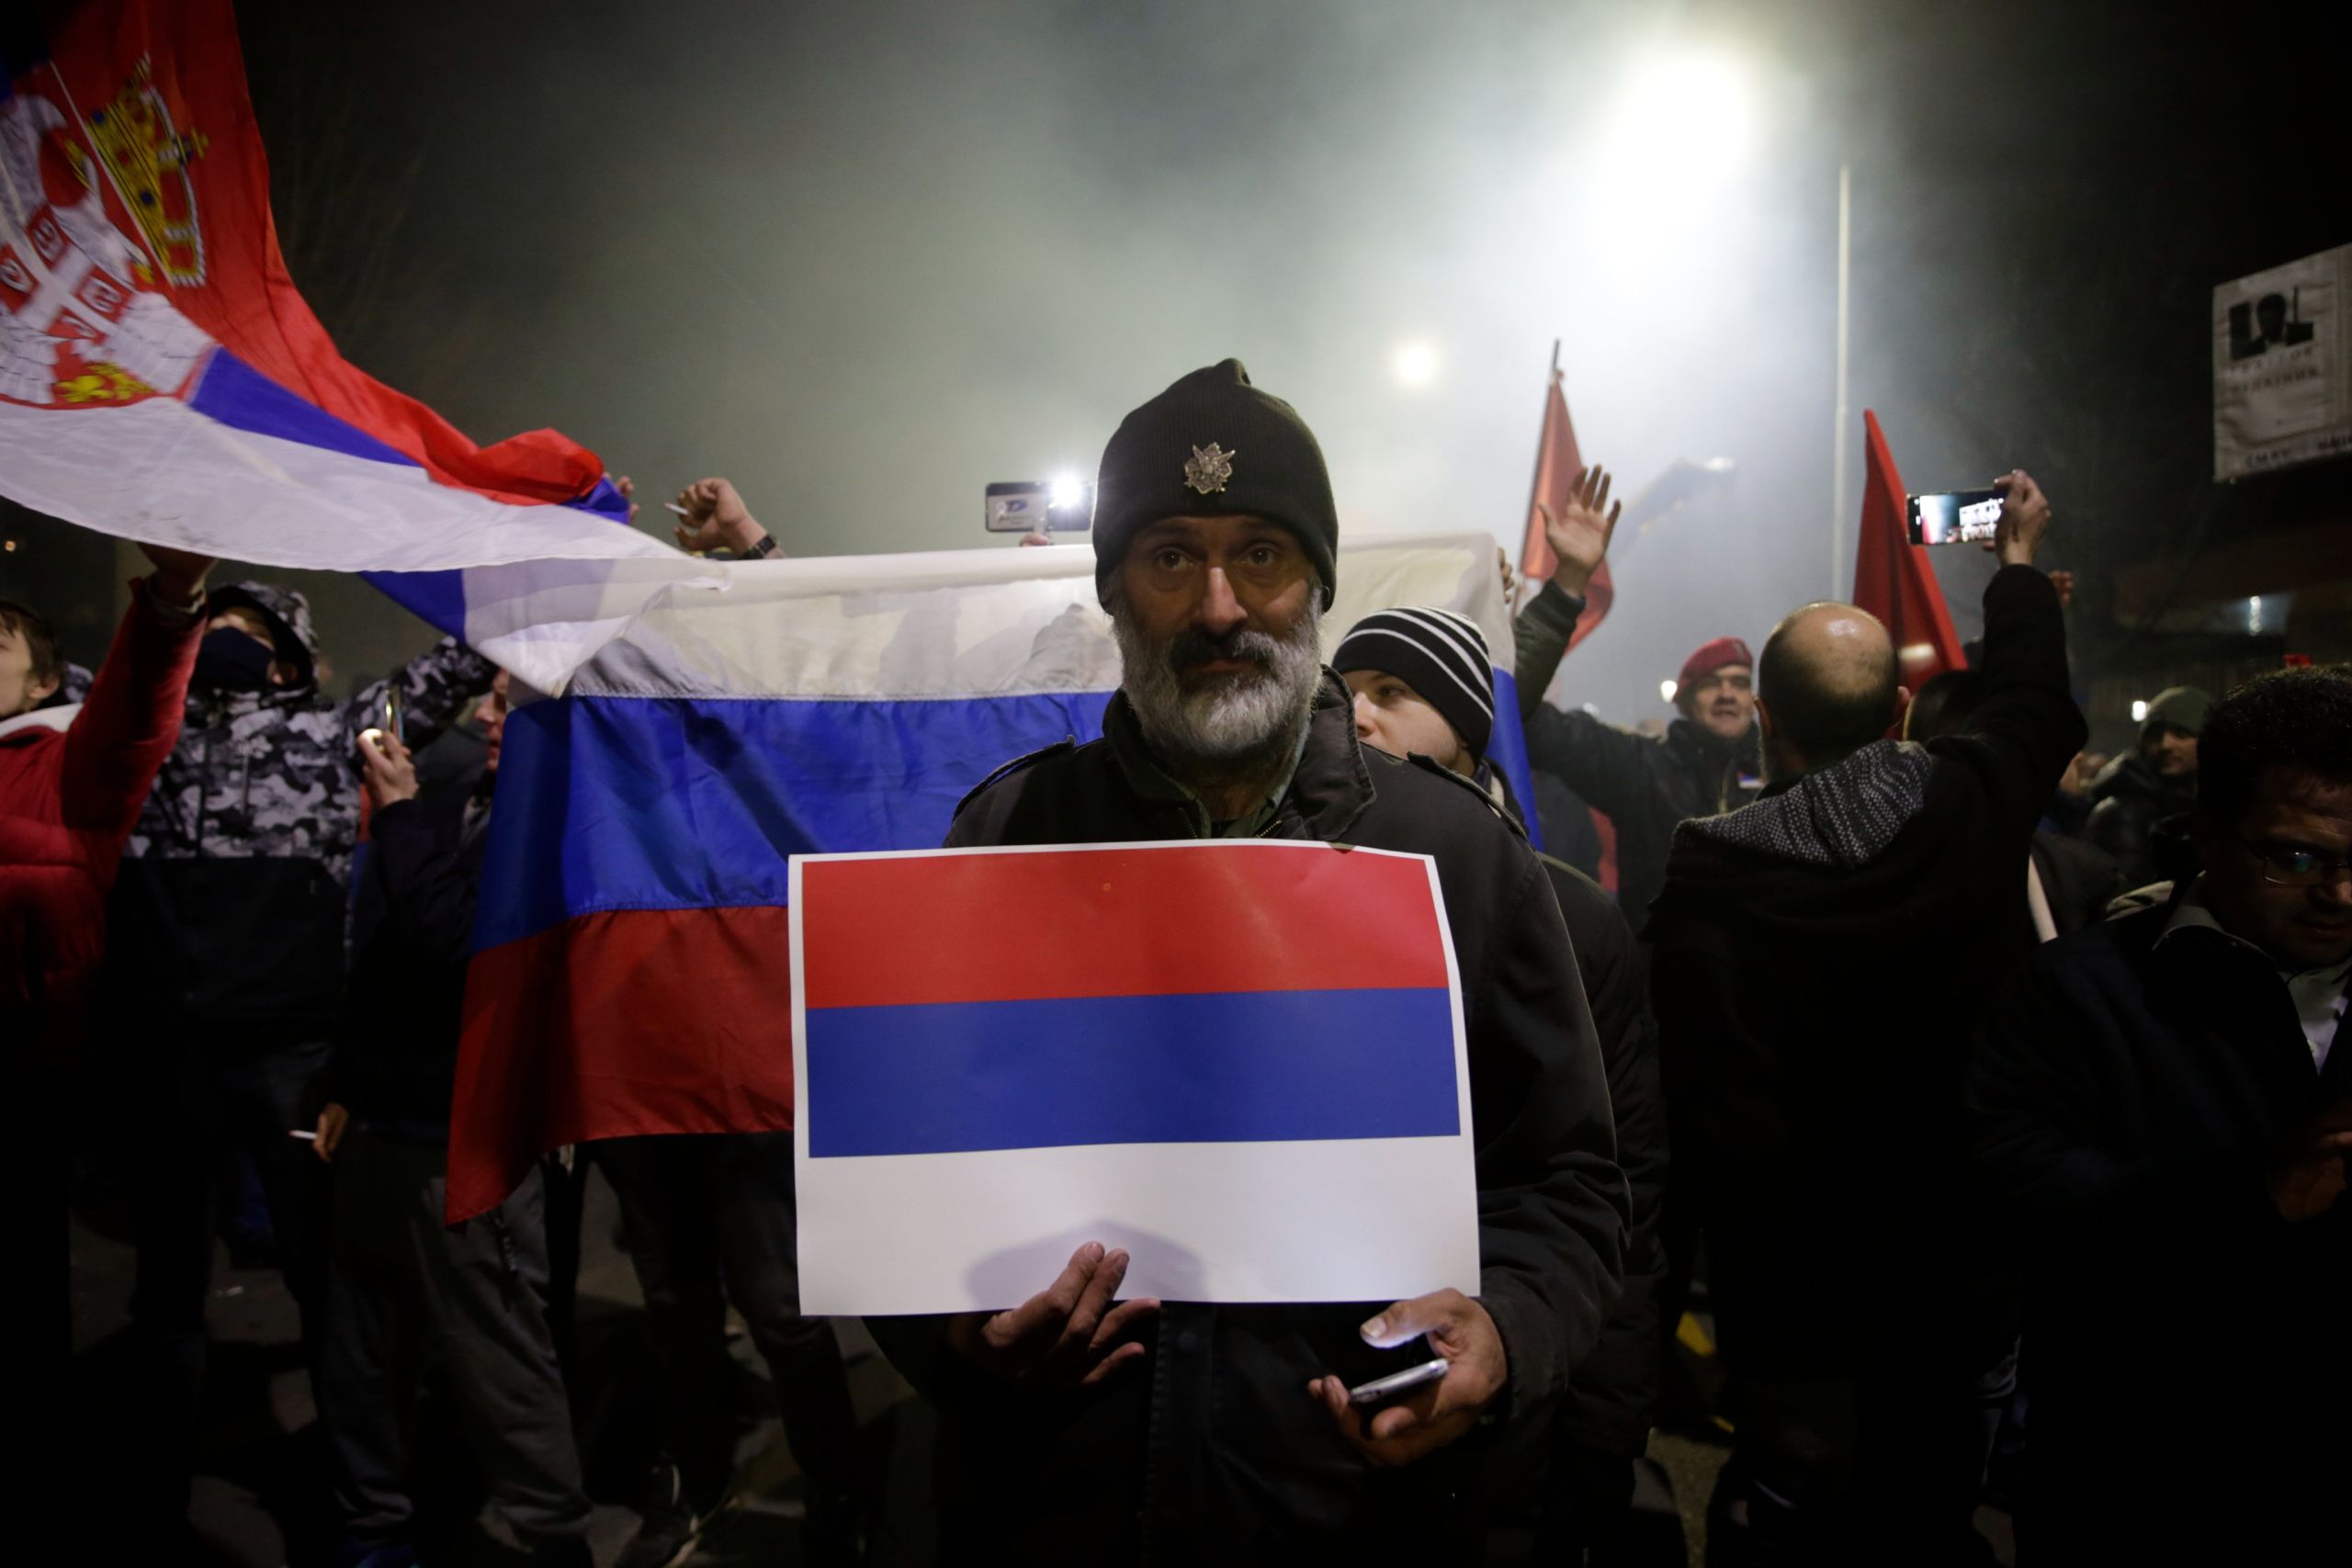 Πρόταση-βόμβα από τη Ρωσία: Η Σερβία να ενταχθεί στην Ρωσική Ομοσπονδία